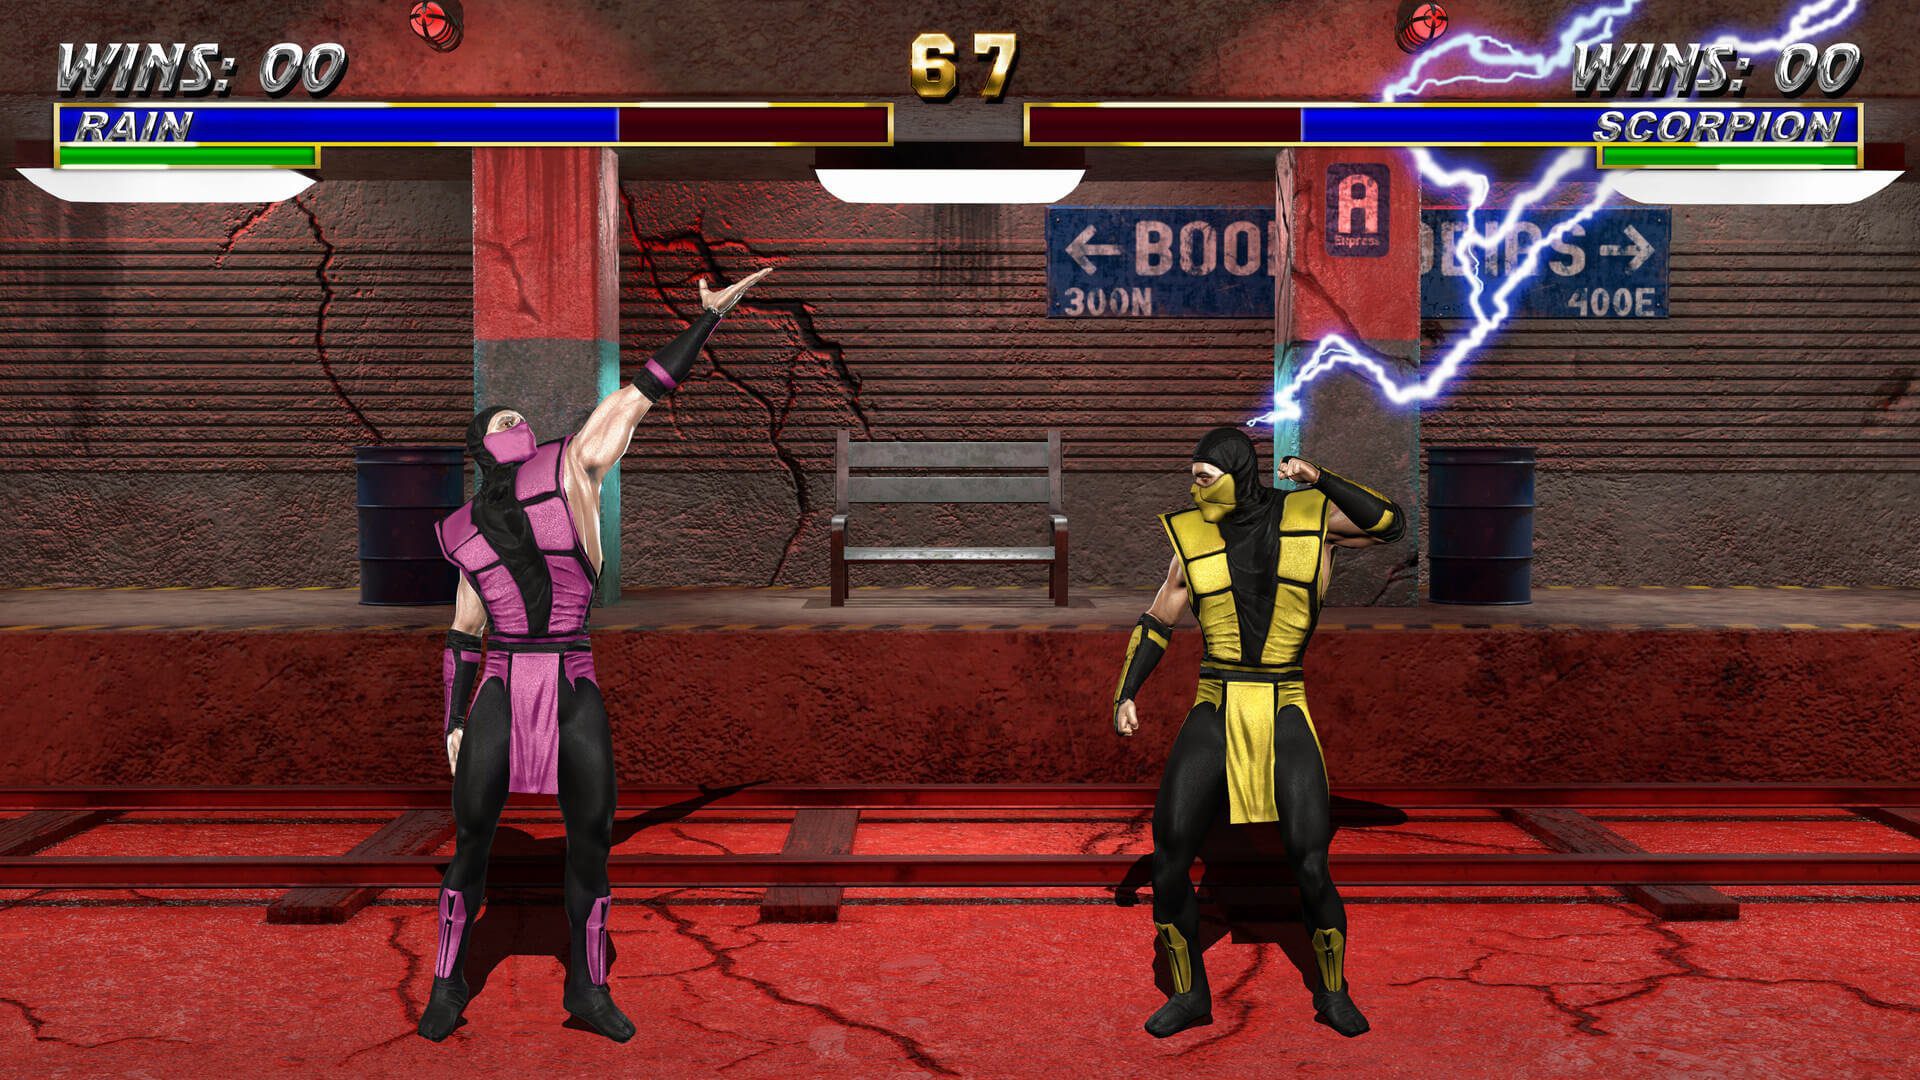 Un estudio indie intenta remasterizar la trilogía original de Mortal Kombat con Unreal Engine 5 - Une studio crea una petición en change.org para que la trilogía original de Mortal Kombat se haga realidad en 4K y utilizando el motor Unreal Engine 5